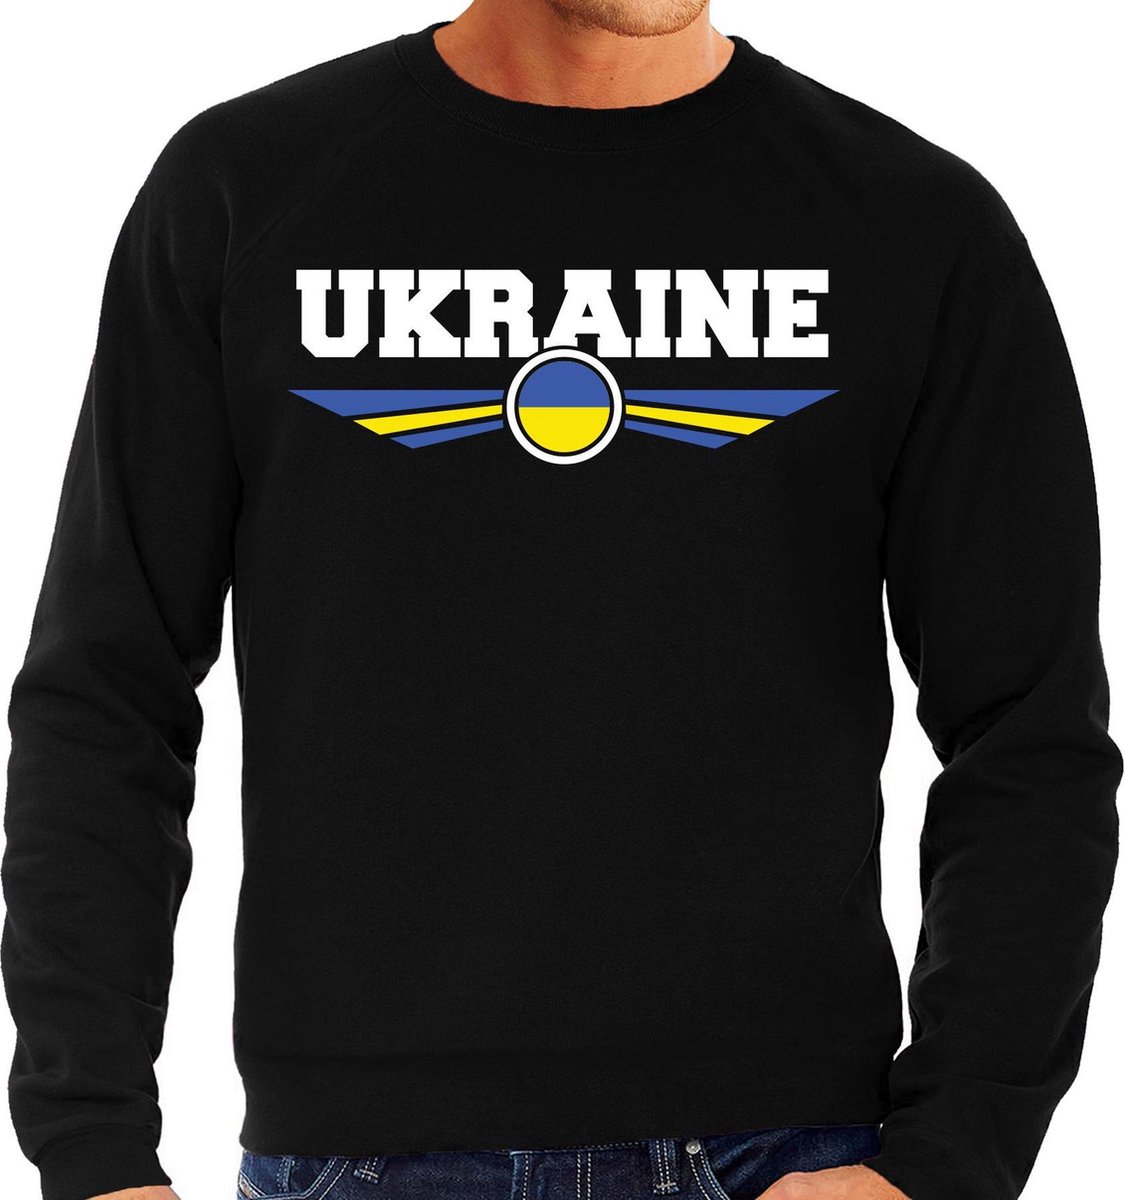 Oekraine / Ukraine landen sweater / trui zwart heren S